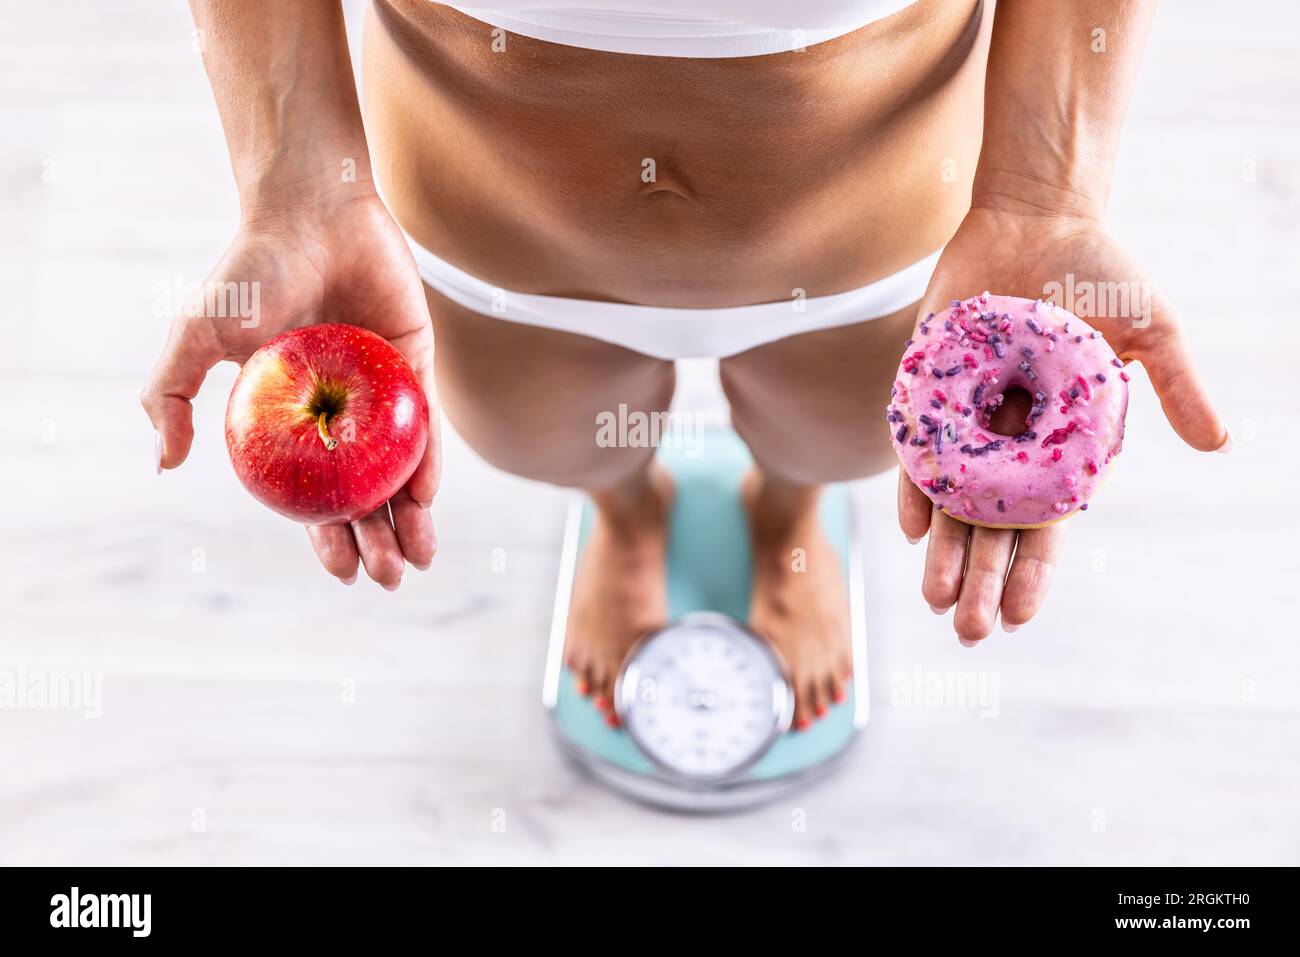 Donna sportiva con un corpo perfetto che misura il peso in scala e regge una ciambella e una mela rossa. Concetto di stile di vita sano o malsano. Foto Stock